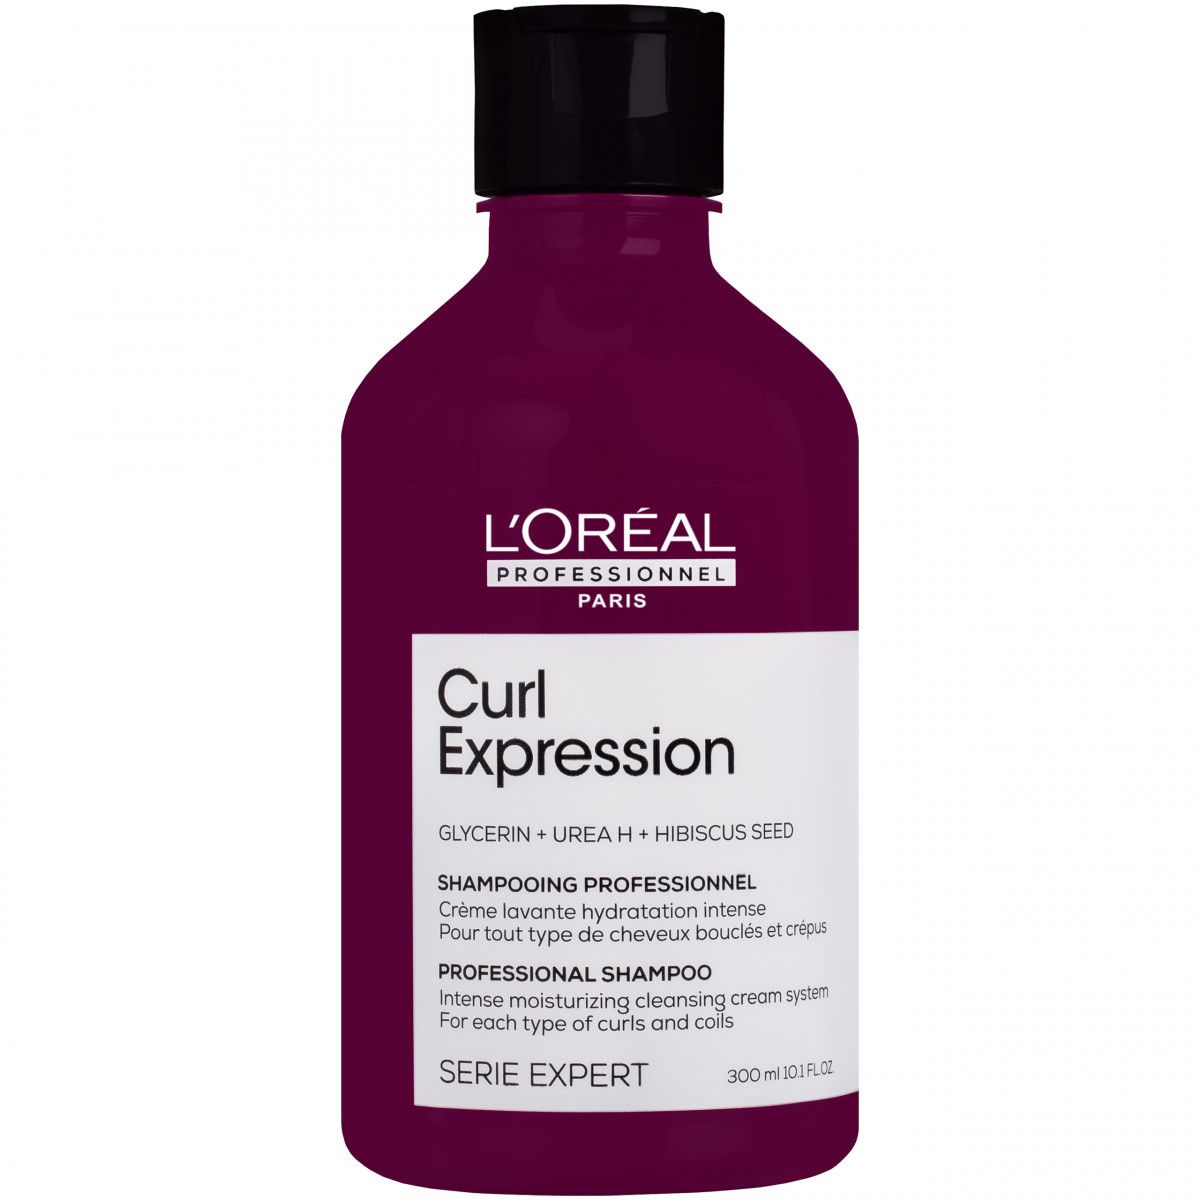 Loreal Curl Expression Anti-Buildup Cleansing Jelly Shampoo - żelowy szampon do włosów kręconych, 250ml